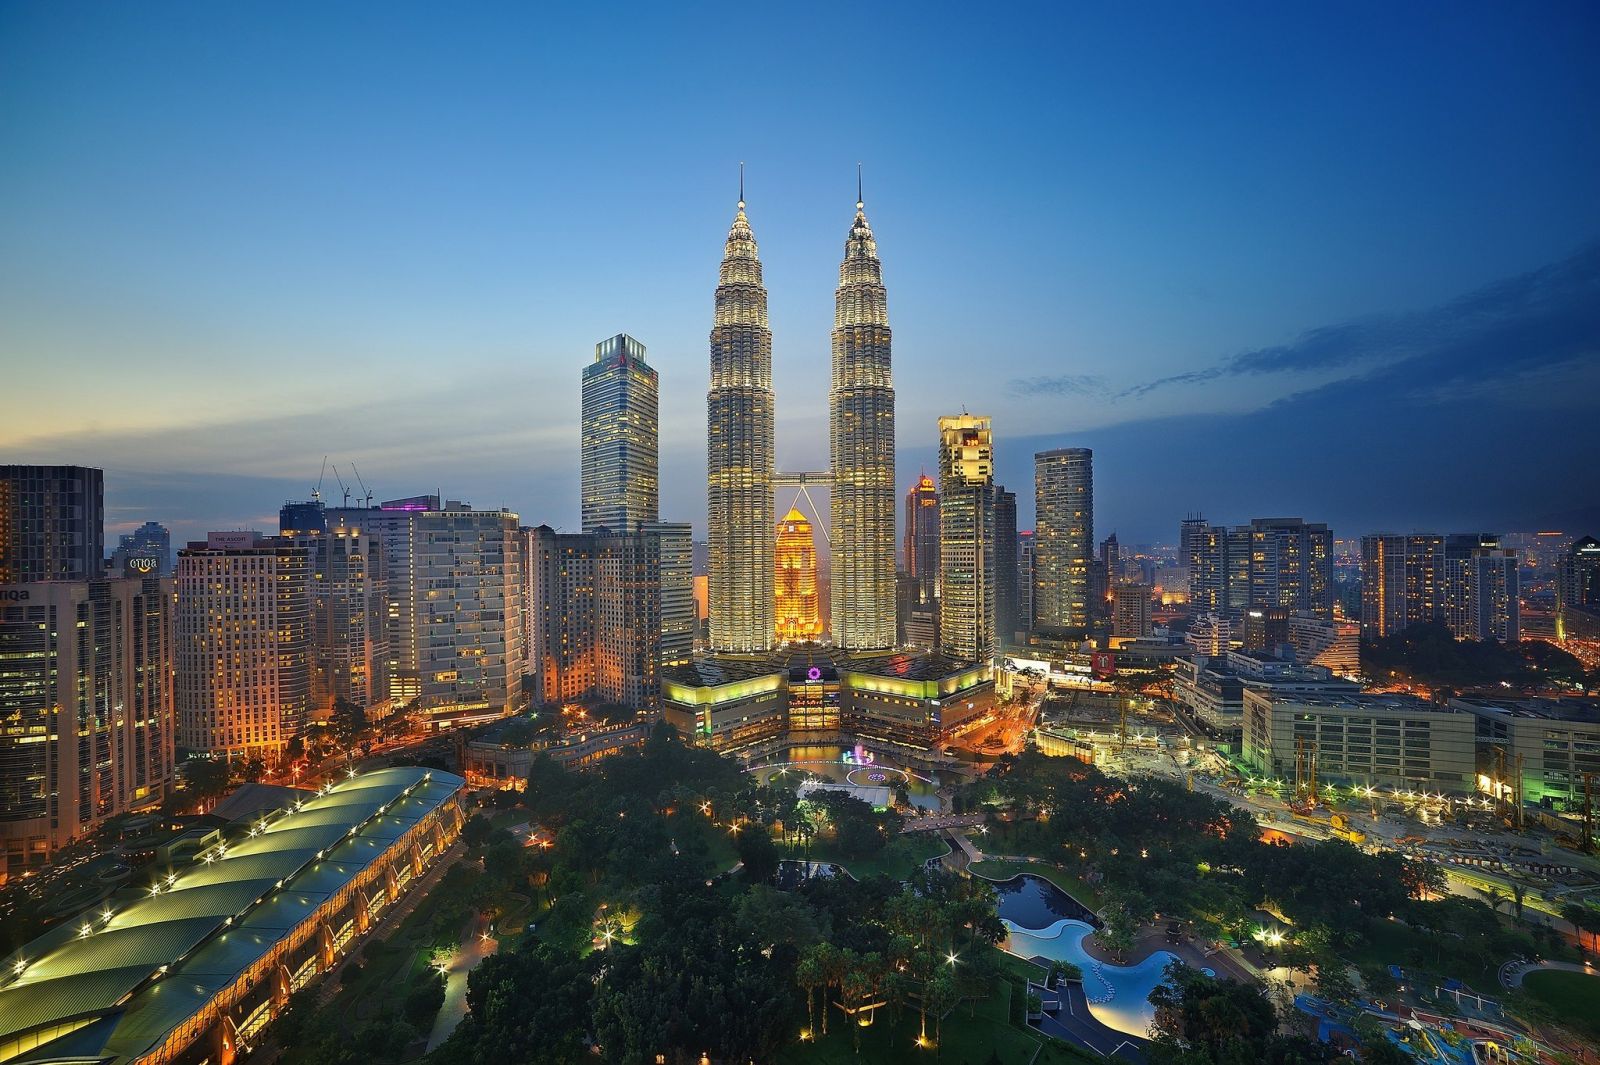 Tháp đôi Petronas - Du lịch Malaysia